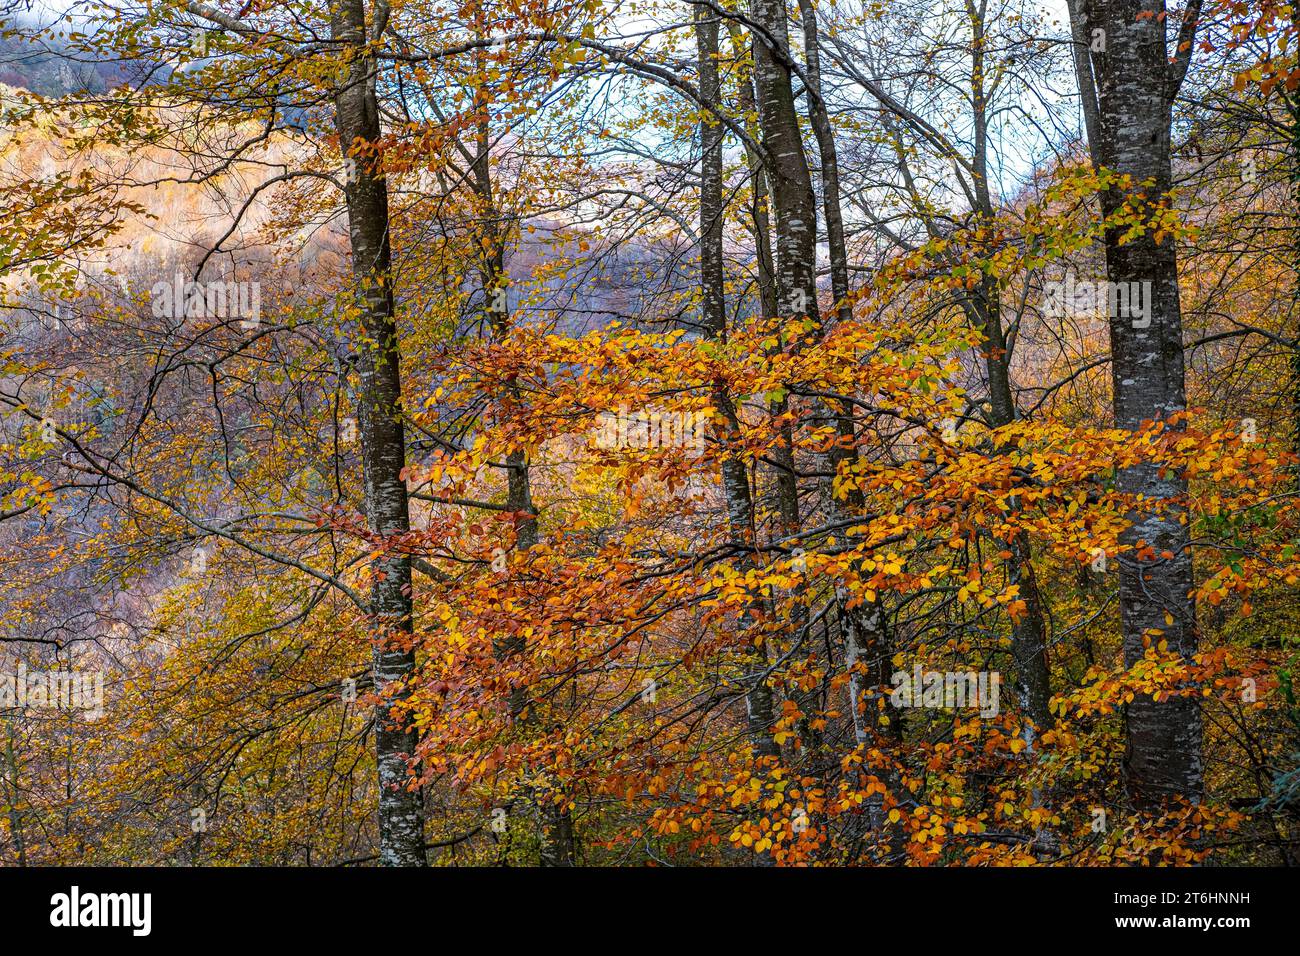 Forêt en automne dans la région de la Garrotxa dans la province de Gérone en Catalogne Espagne Banque D'Images